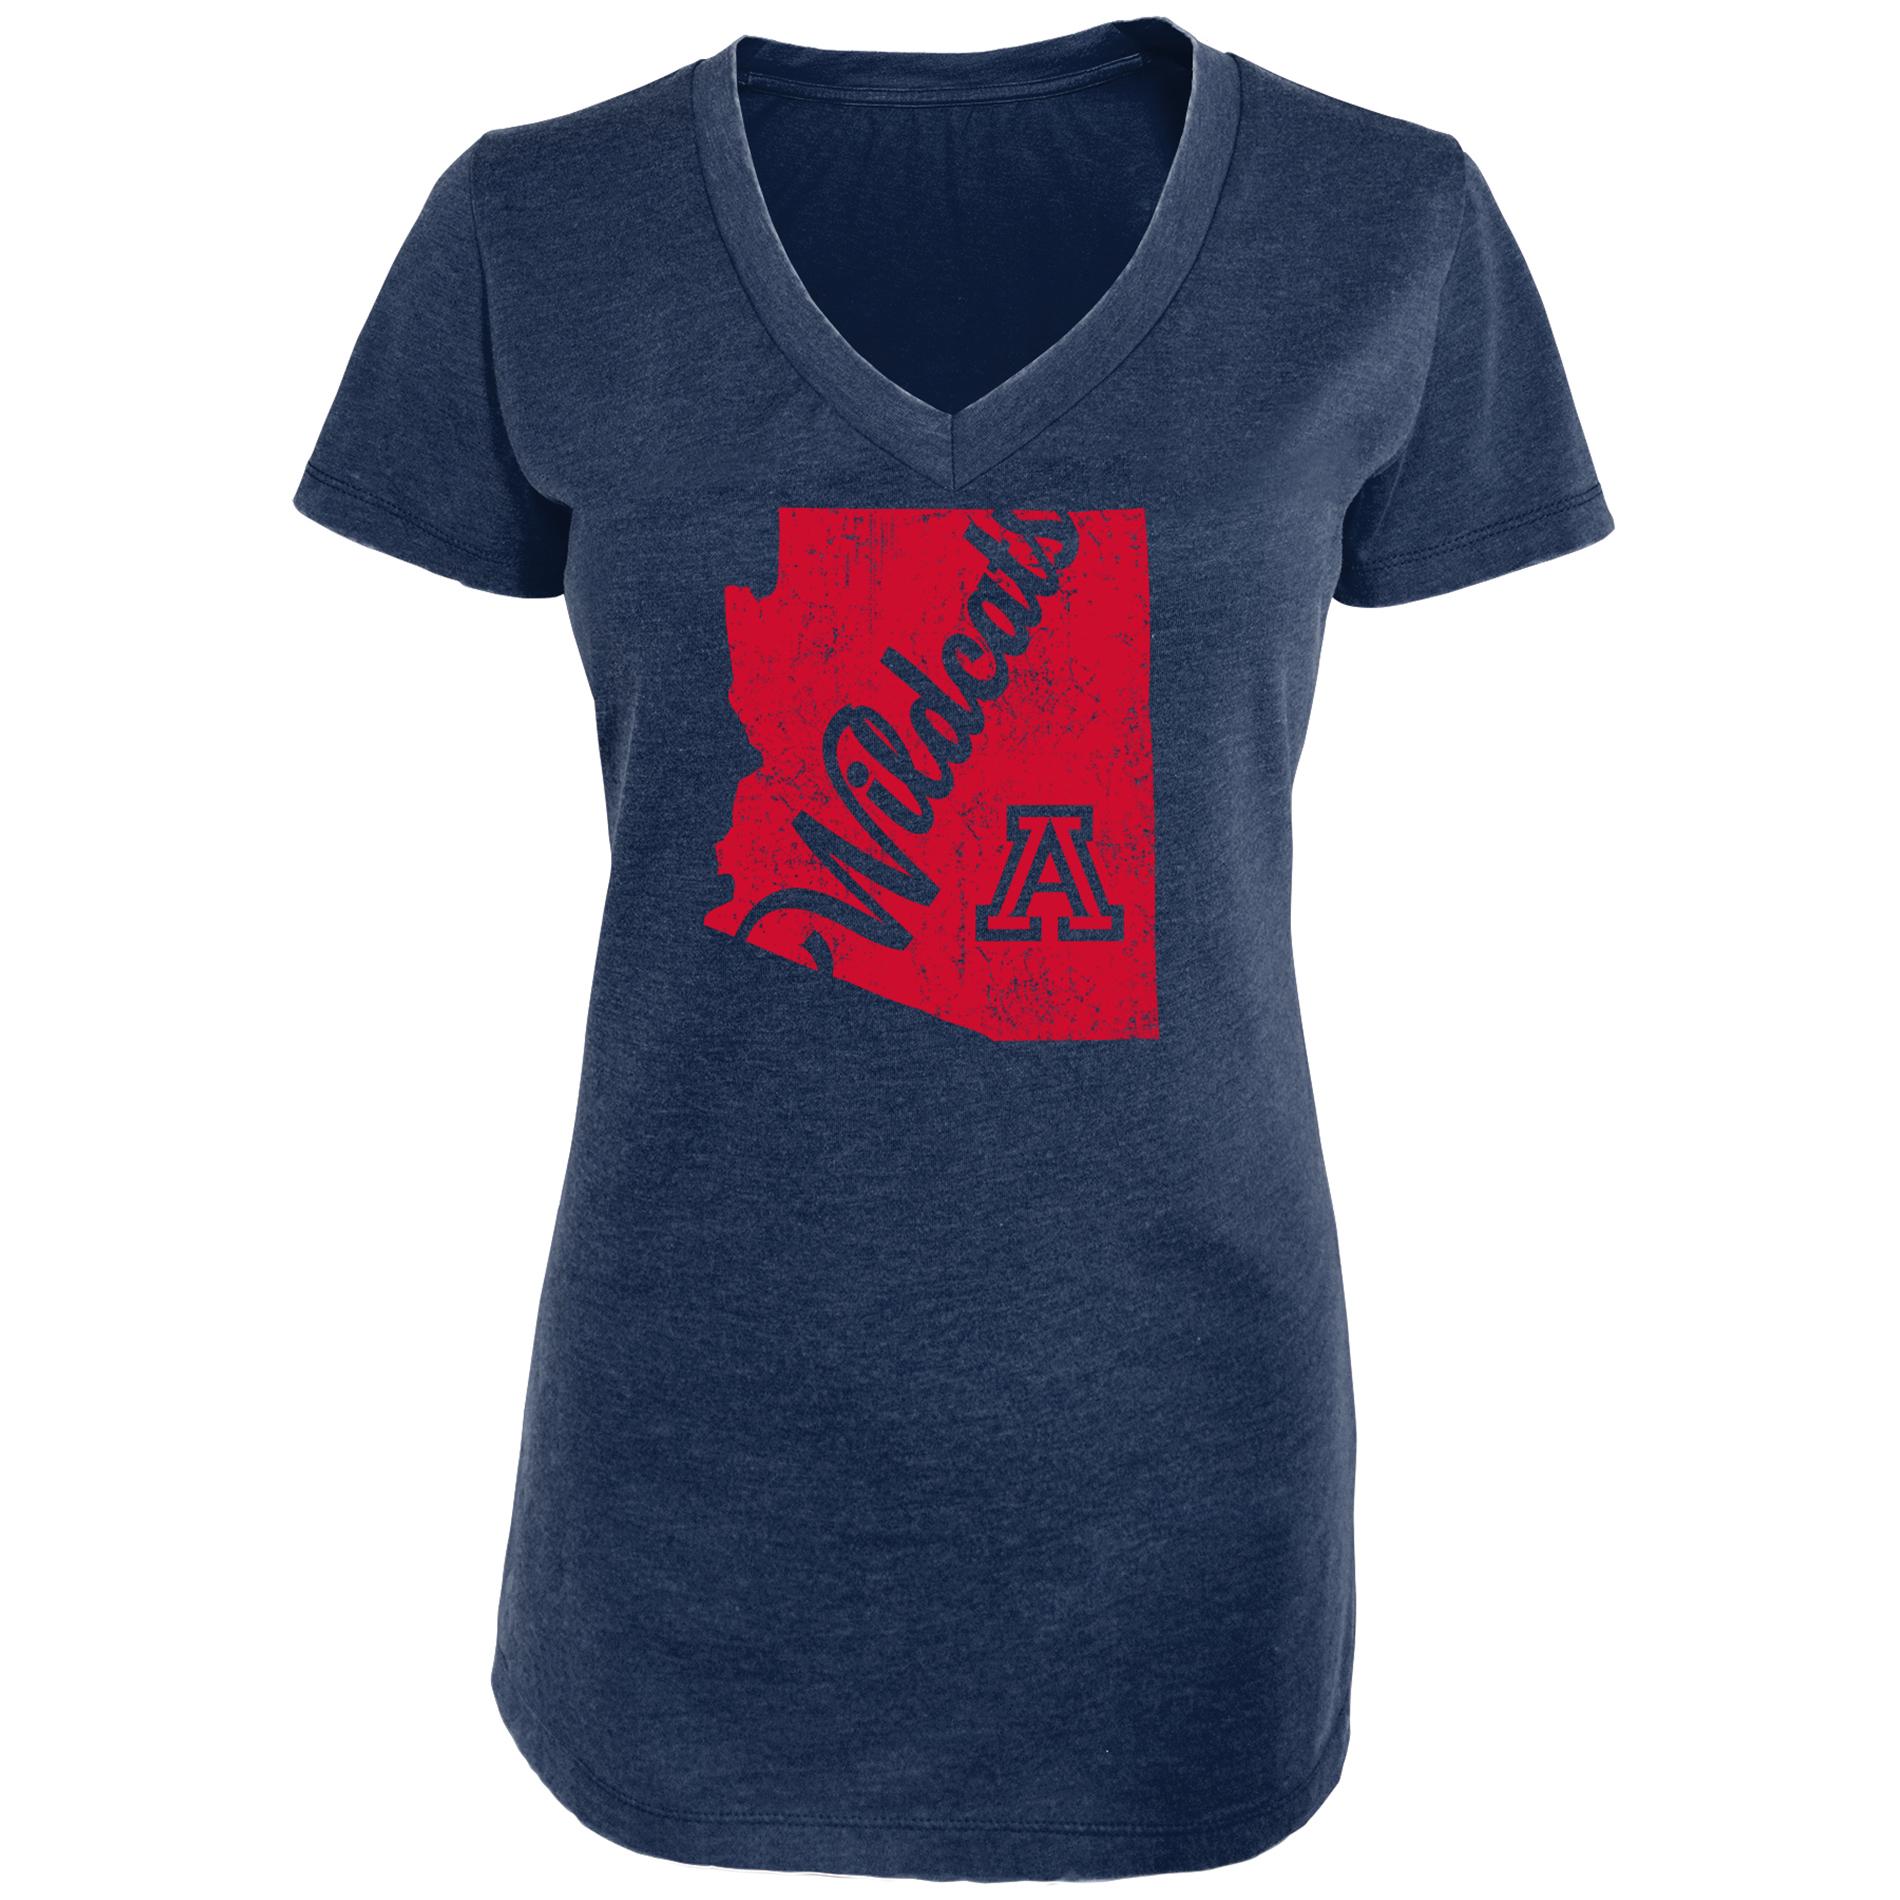 NCAA Women's Graphic T-Shirt - Arizona